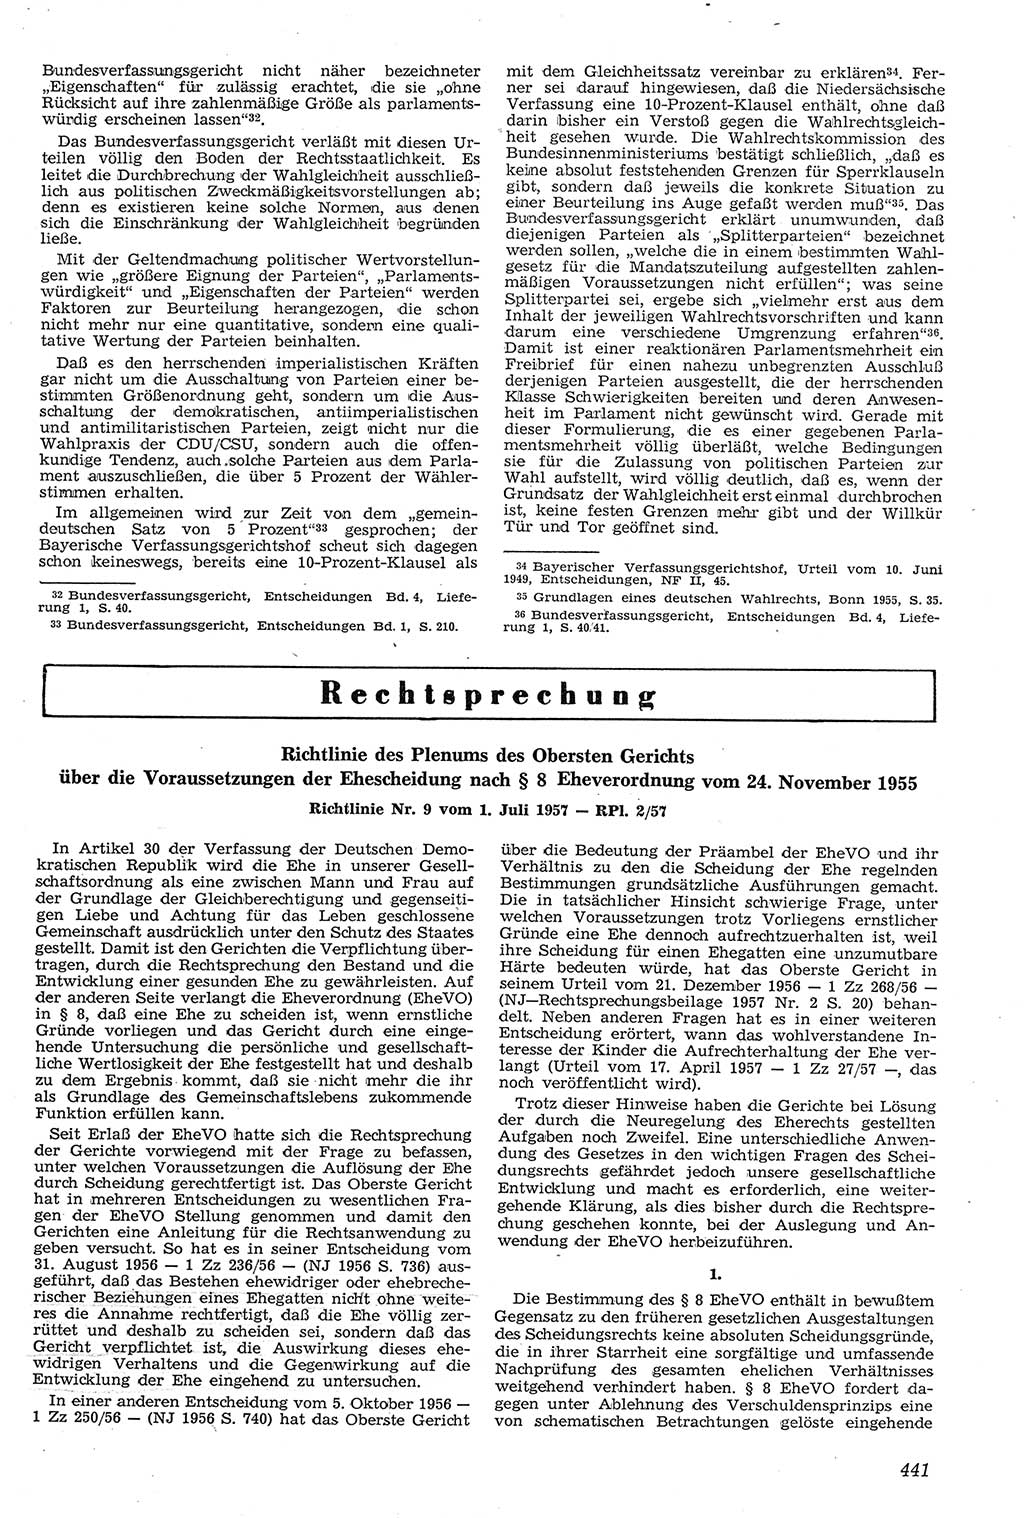 Neue Justiz (NJ), Zeitschrift für Recht und Rechtswissenschaft [Deutsche Demokratische Republik (DDR)], 11. Jahrgang 1957, Seite 441 (NJ DDR 1957, S. 441)